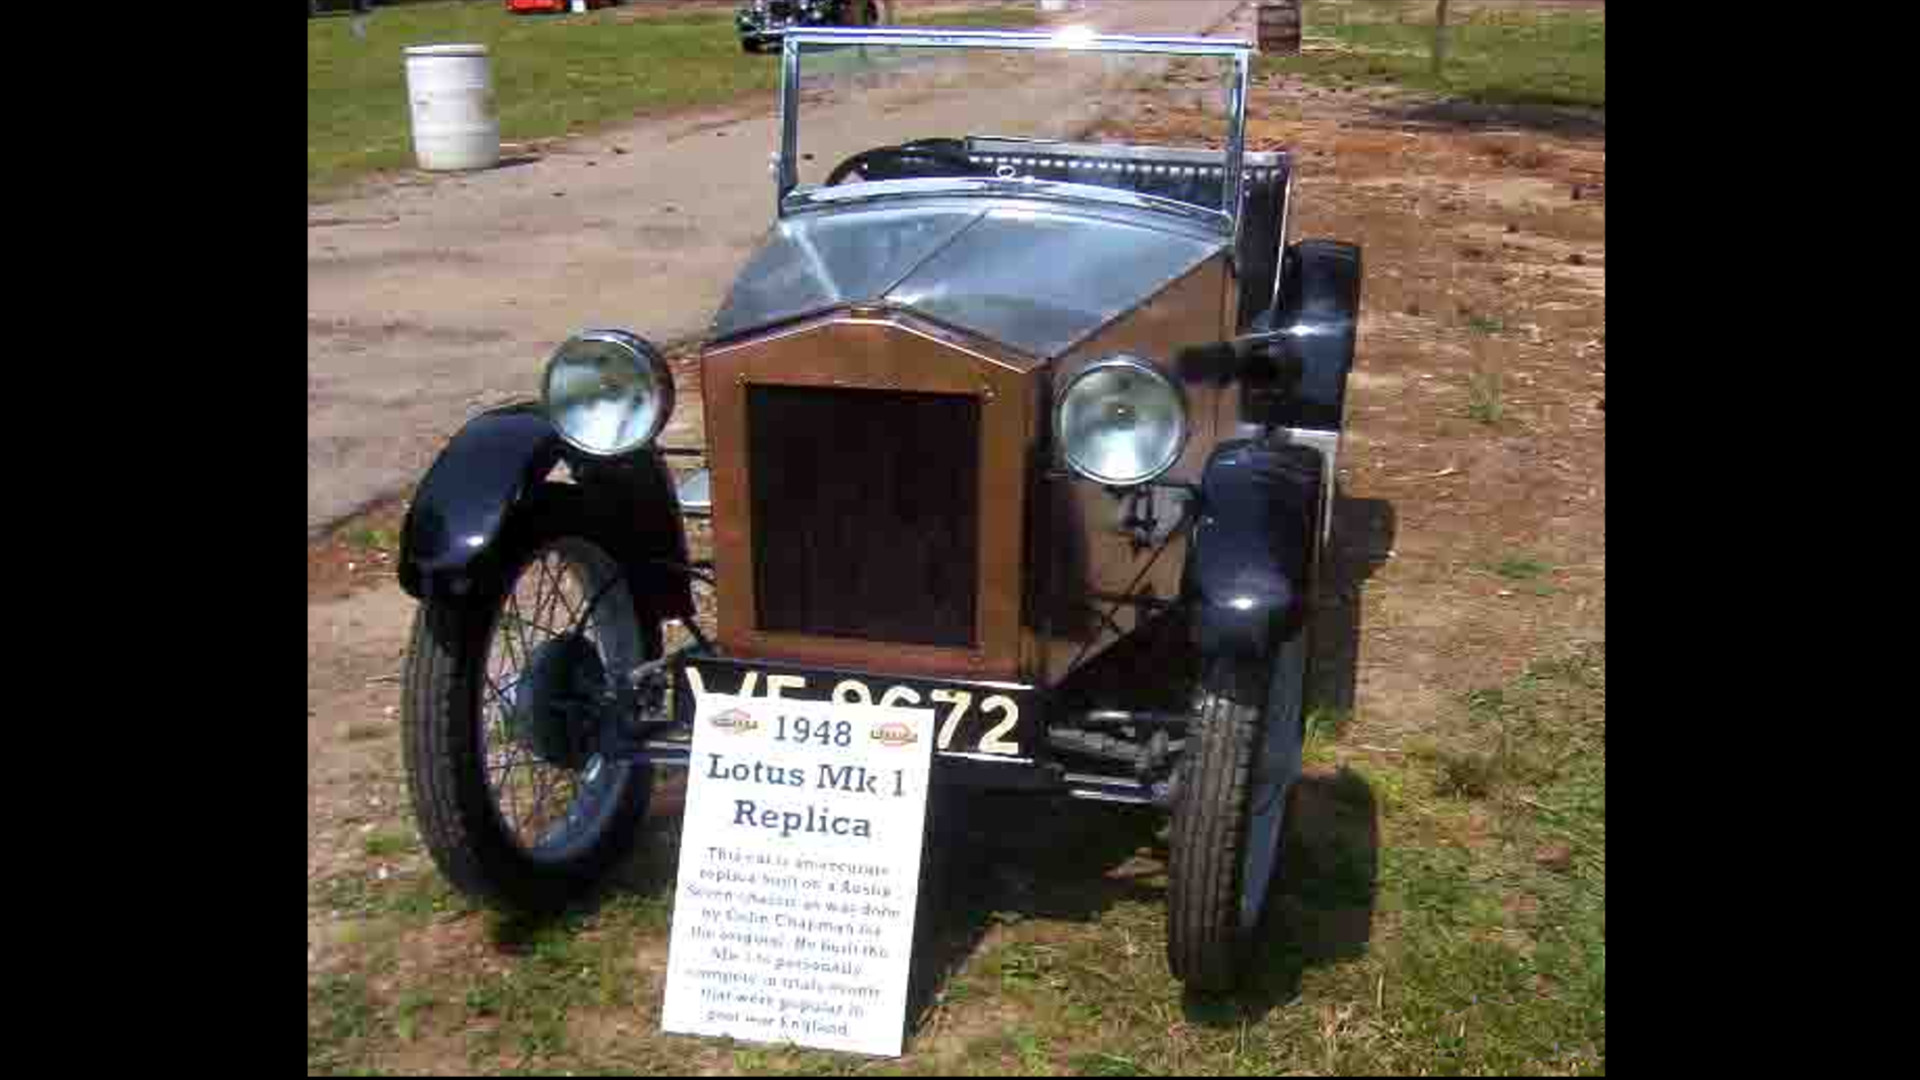 Lotus busca el primer coche que fabricaron1920